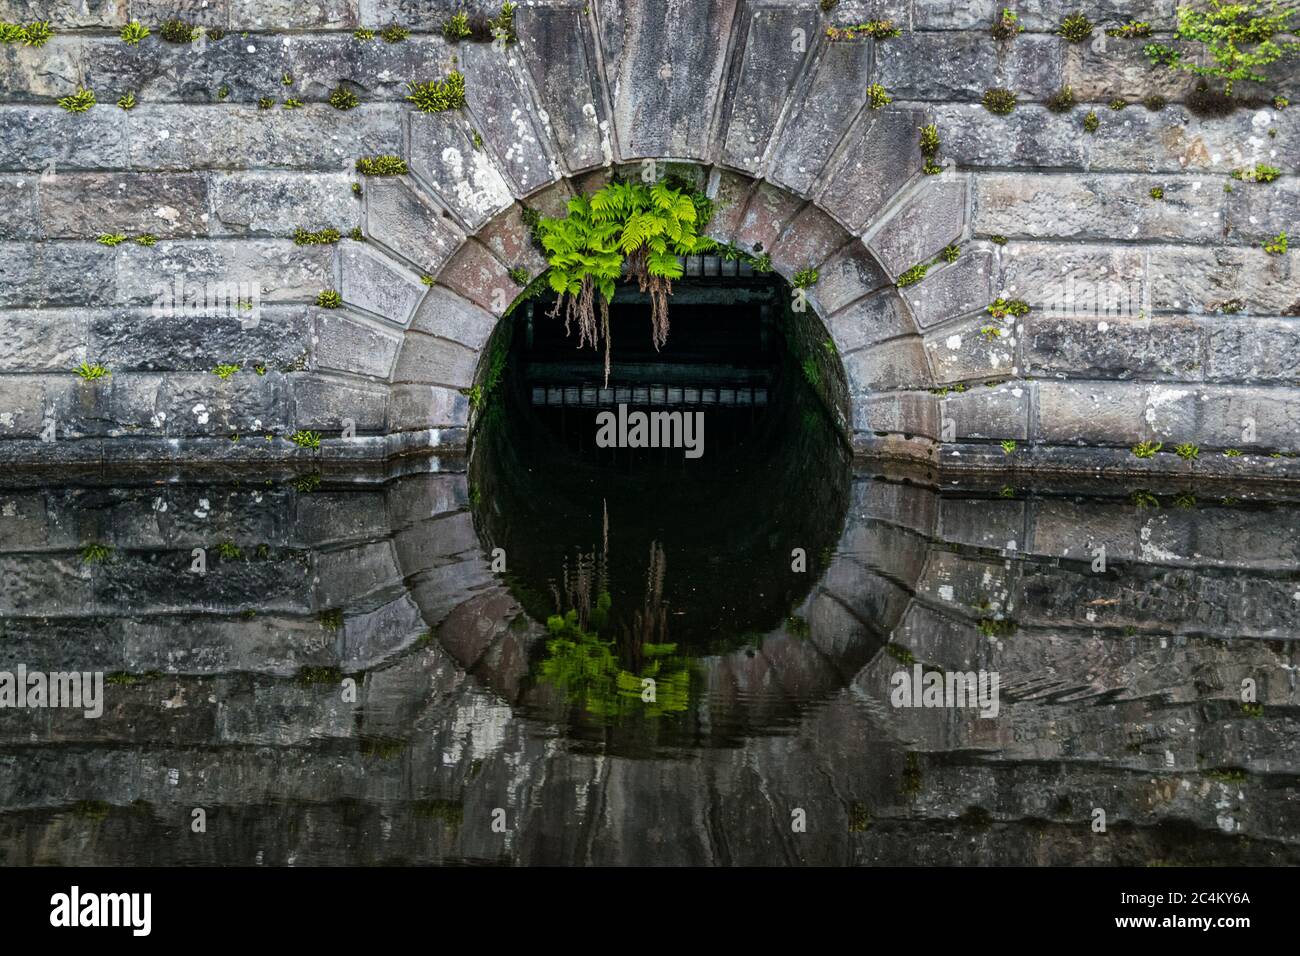 Detail eines alten Steindamms, der sich im Wasser von Milngavie Waterworks, der Wasseraufbereitungsanlage in Milngavie, Schottland, widerspiegelt. Stockfoto